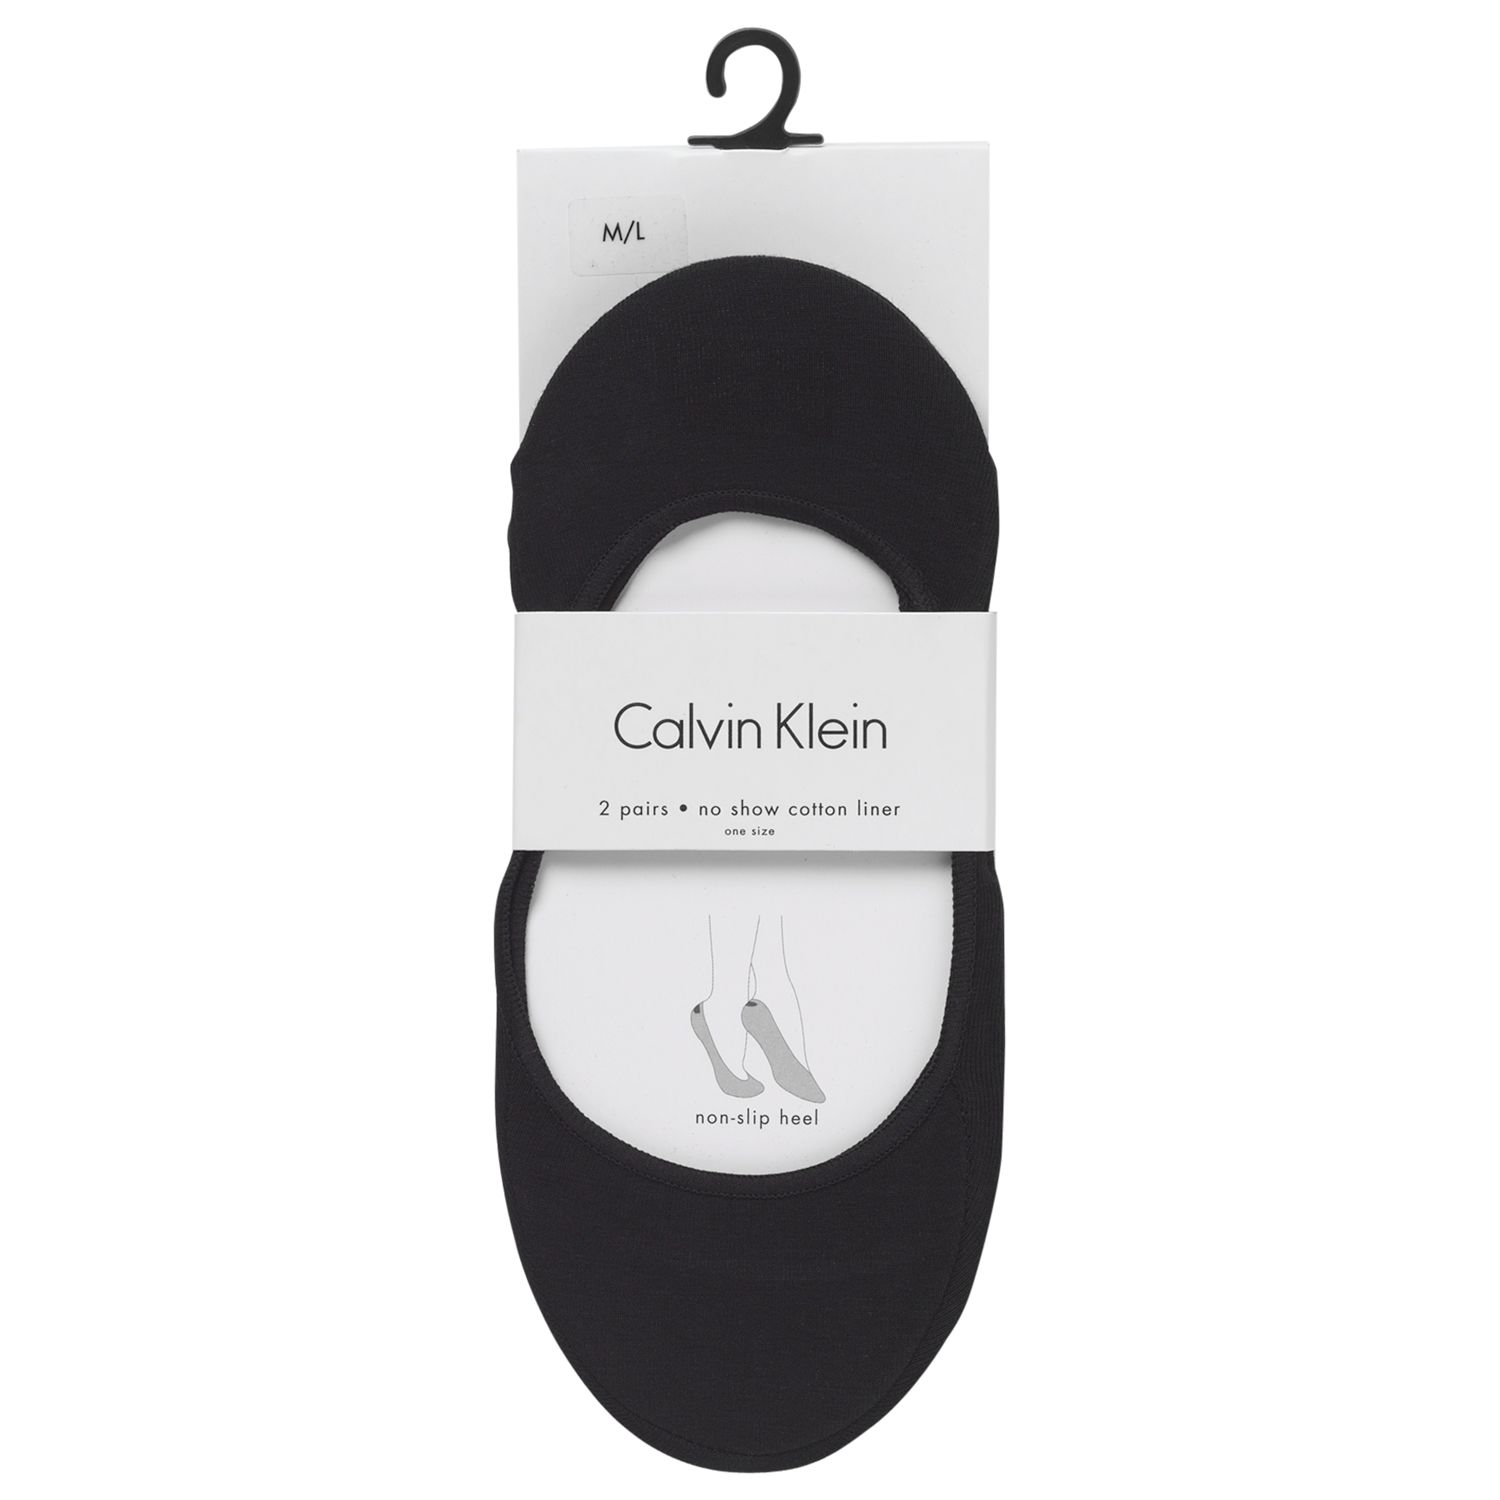 Calvin Klein Ballet Liner Socks, Pack of 2, Black, S-M